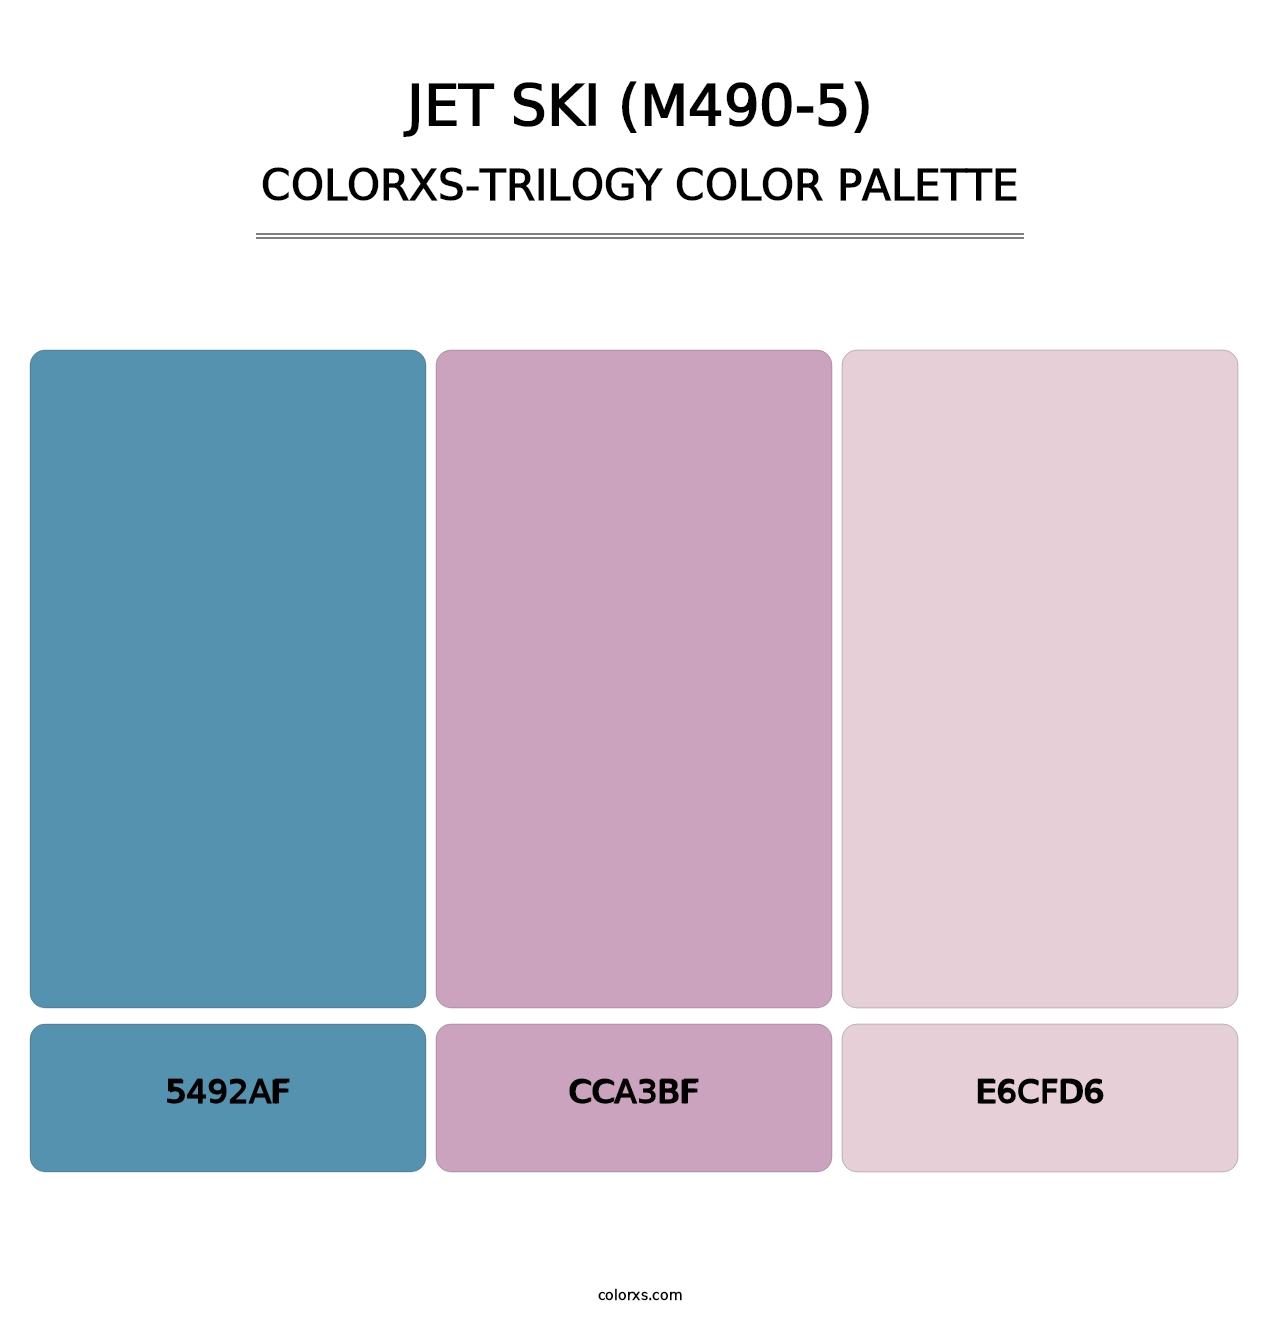 Jet Ski (M490-5) - Colorxs Trilogy Palette